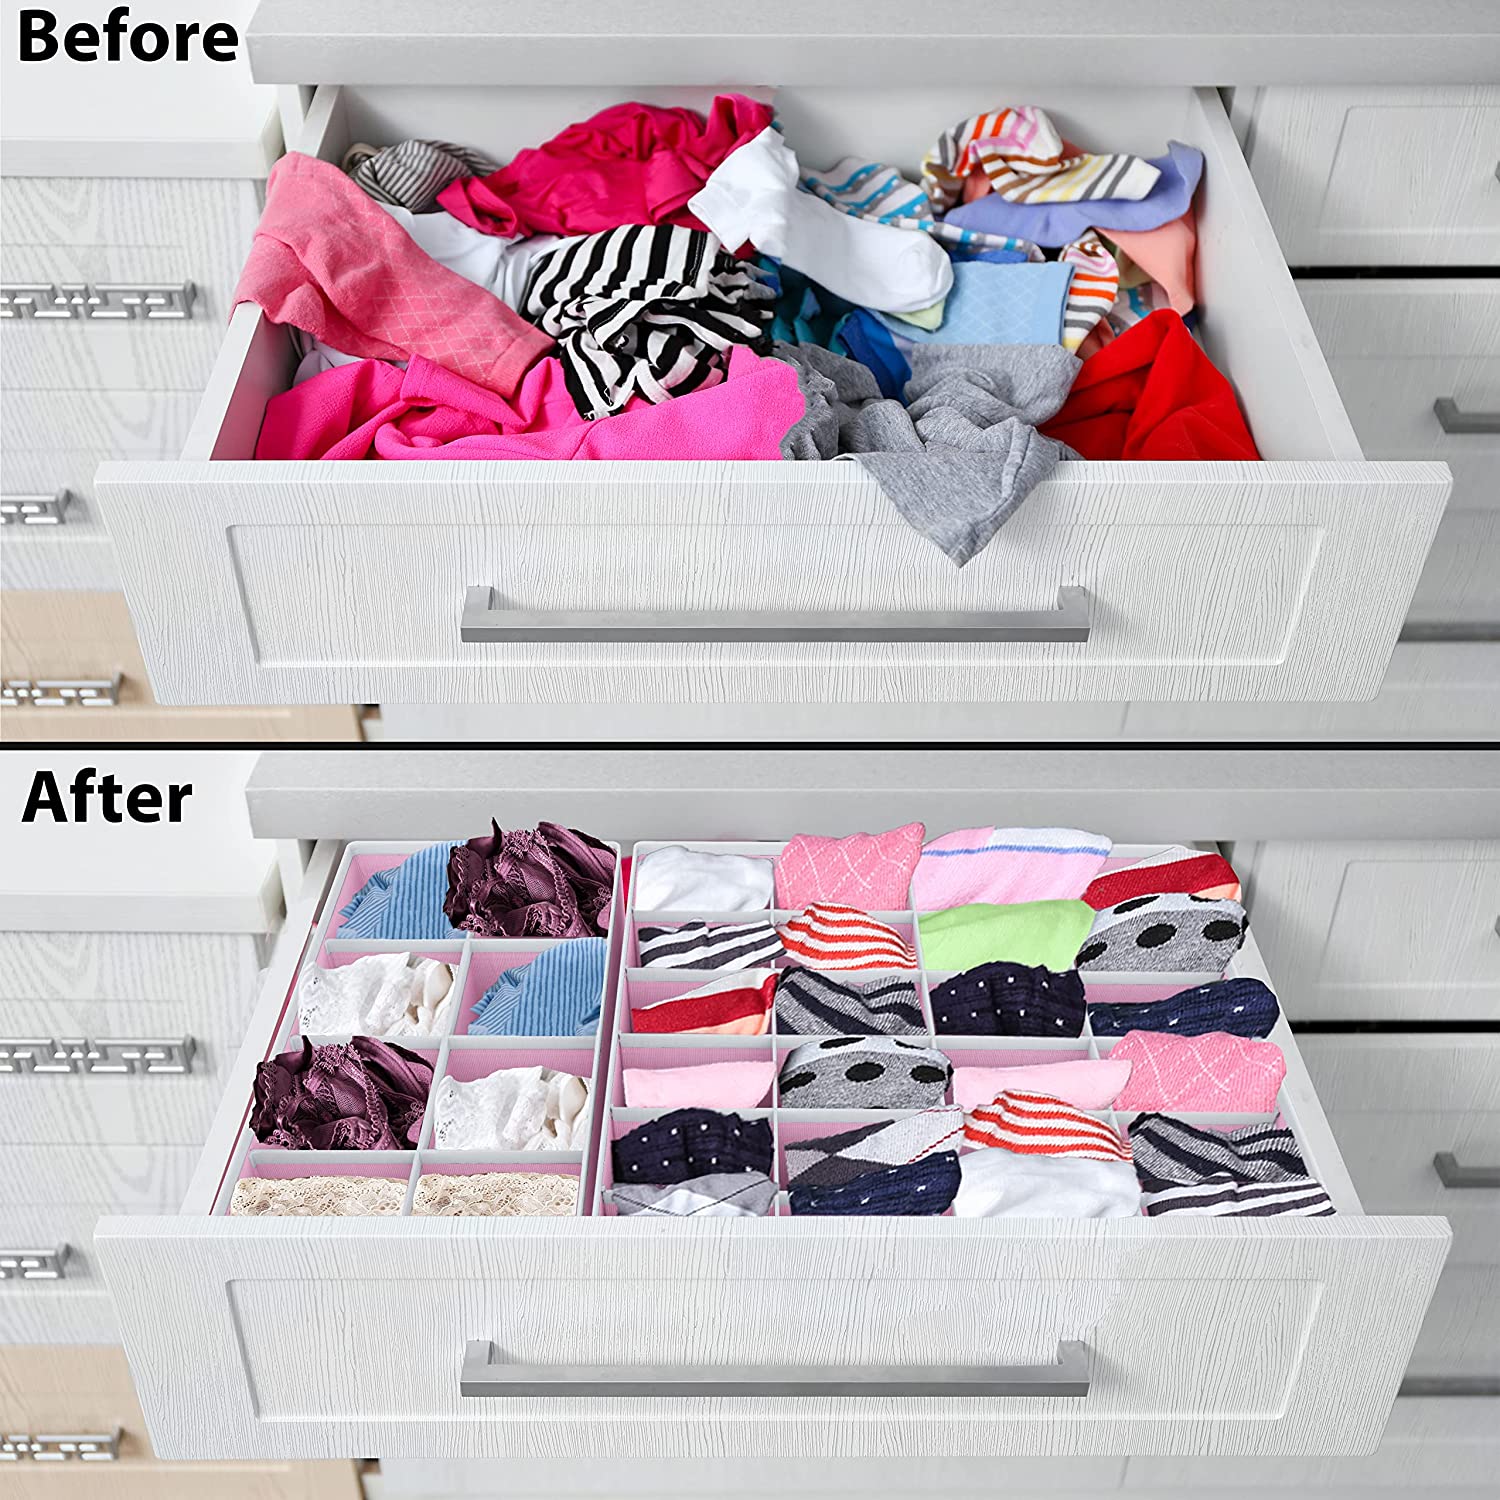 How To Fold Underwear  Closet Organization for your Underwear Drawer 